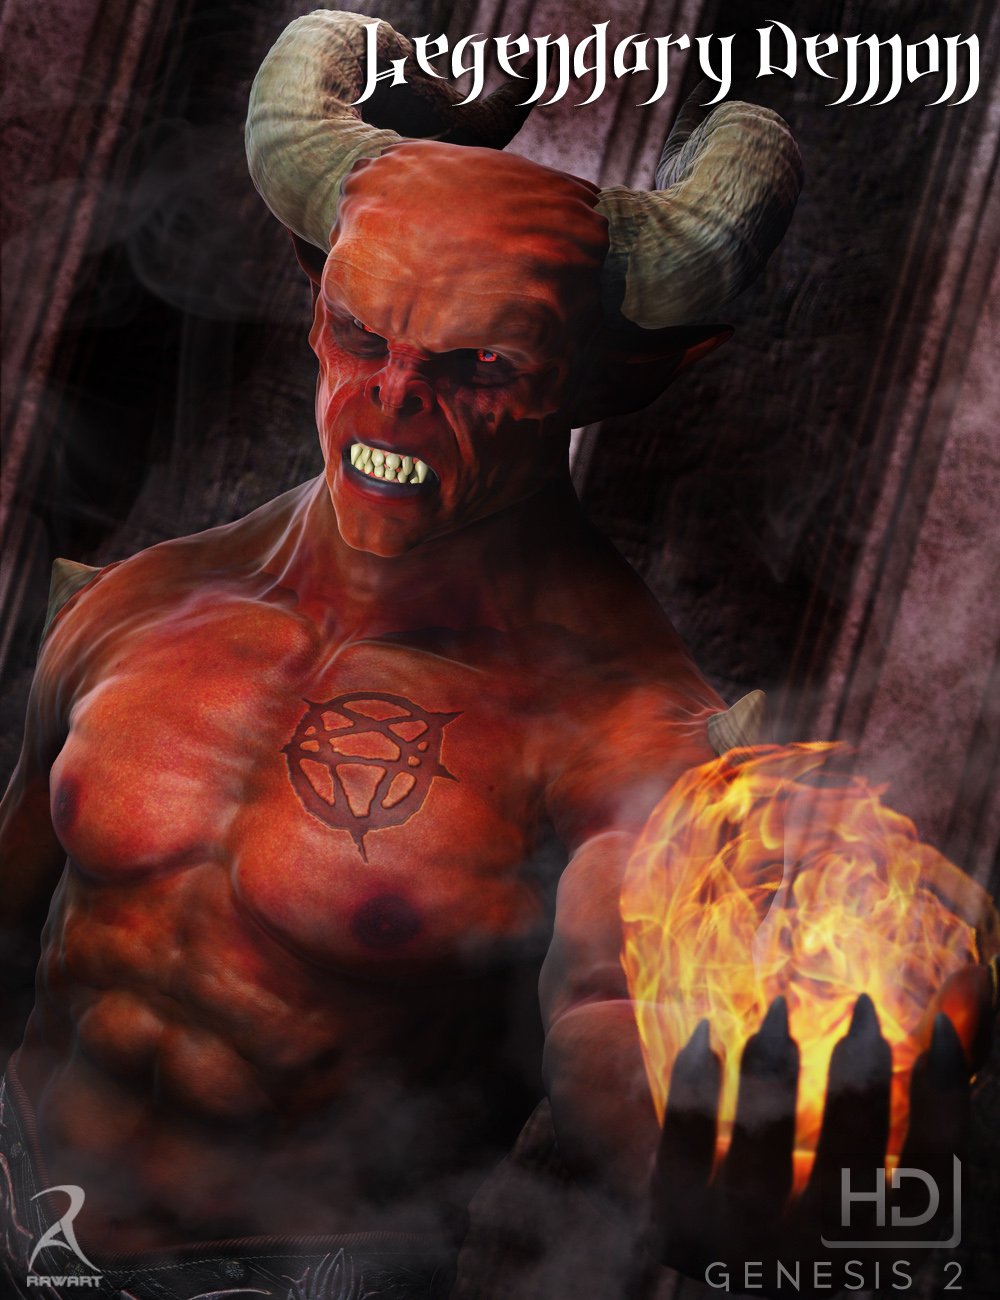 Legendary Demon HD by: RawArt, 3D Models by Daz 3D